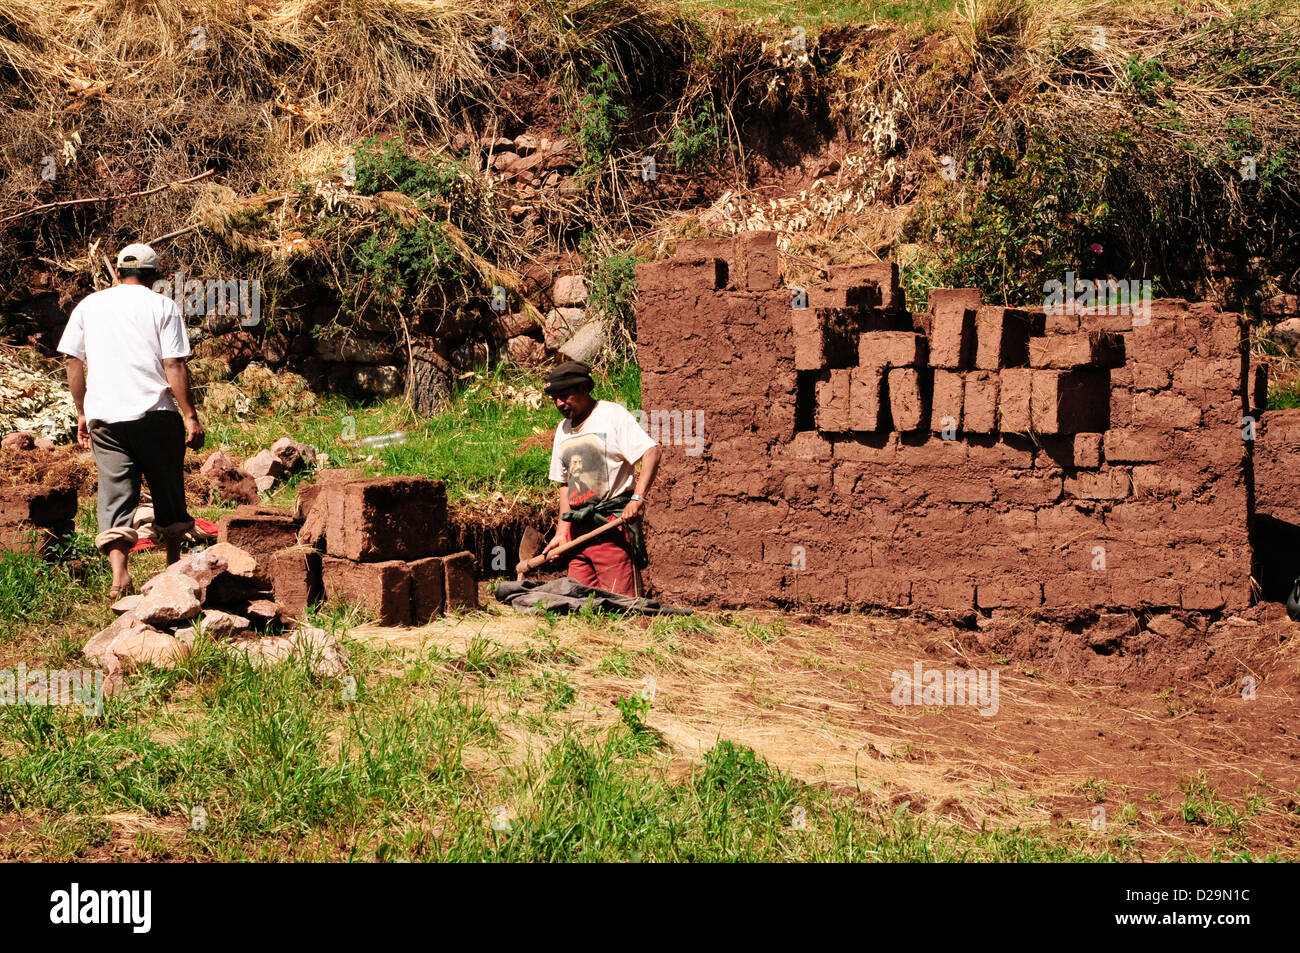 Men Making Adobe Bricks, Peru Stock Photo